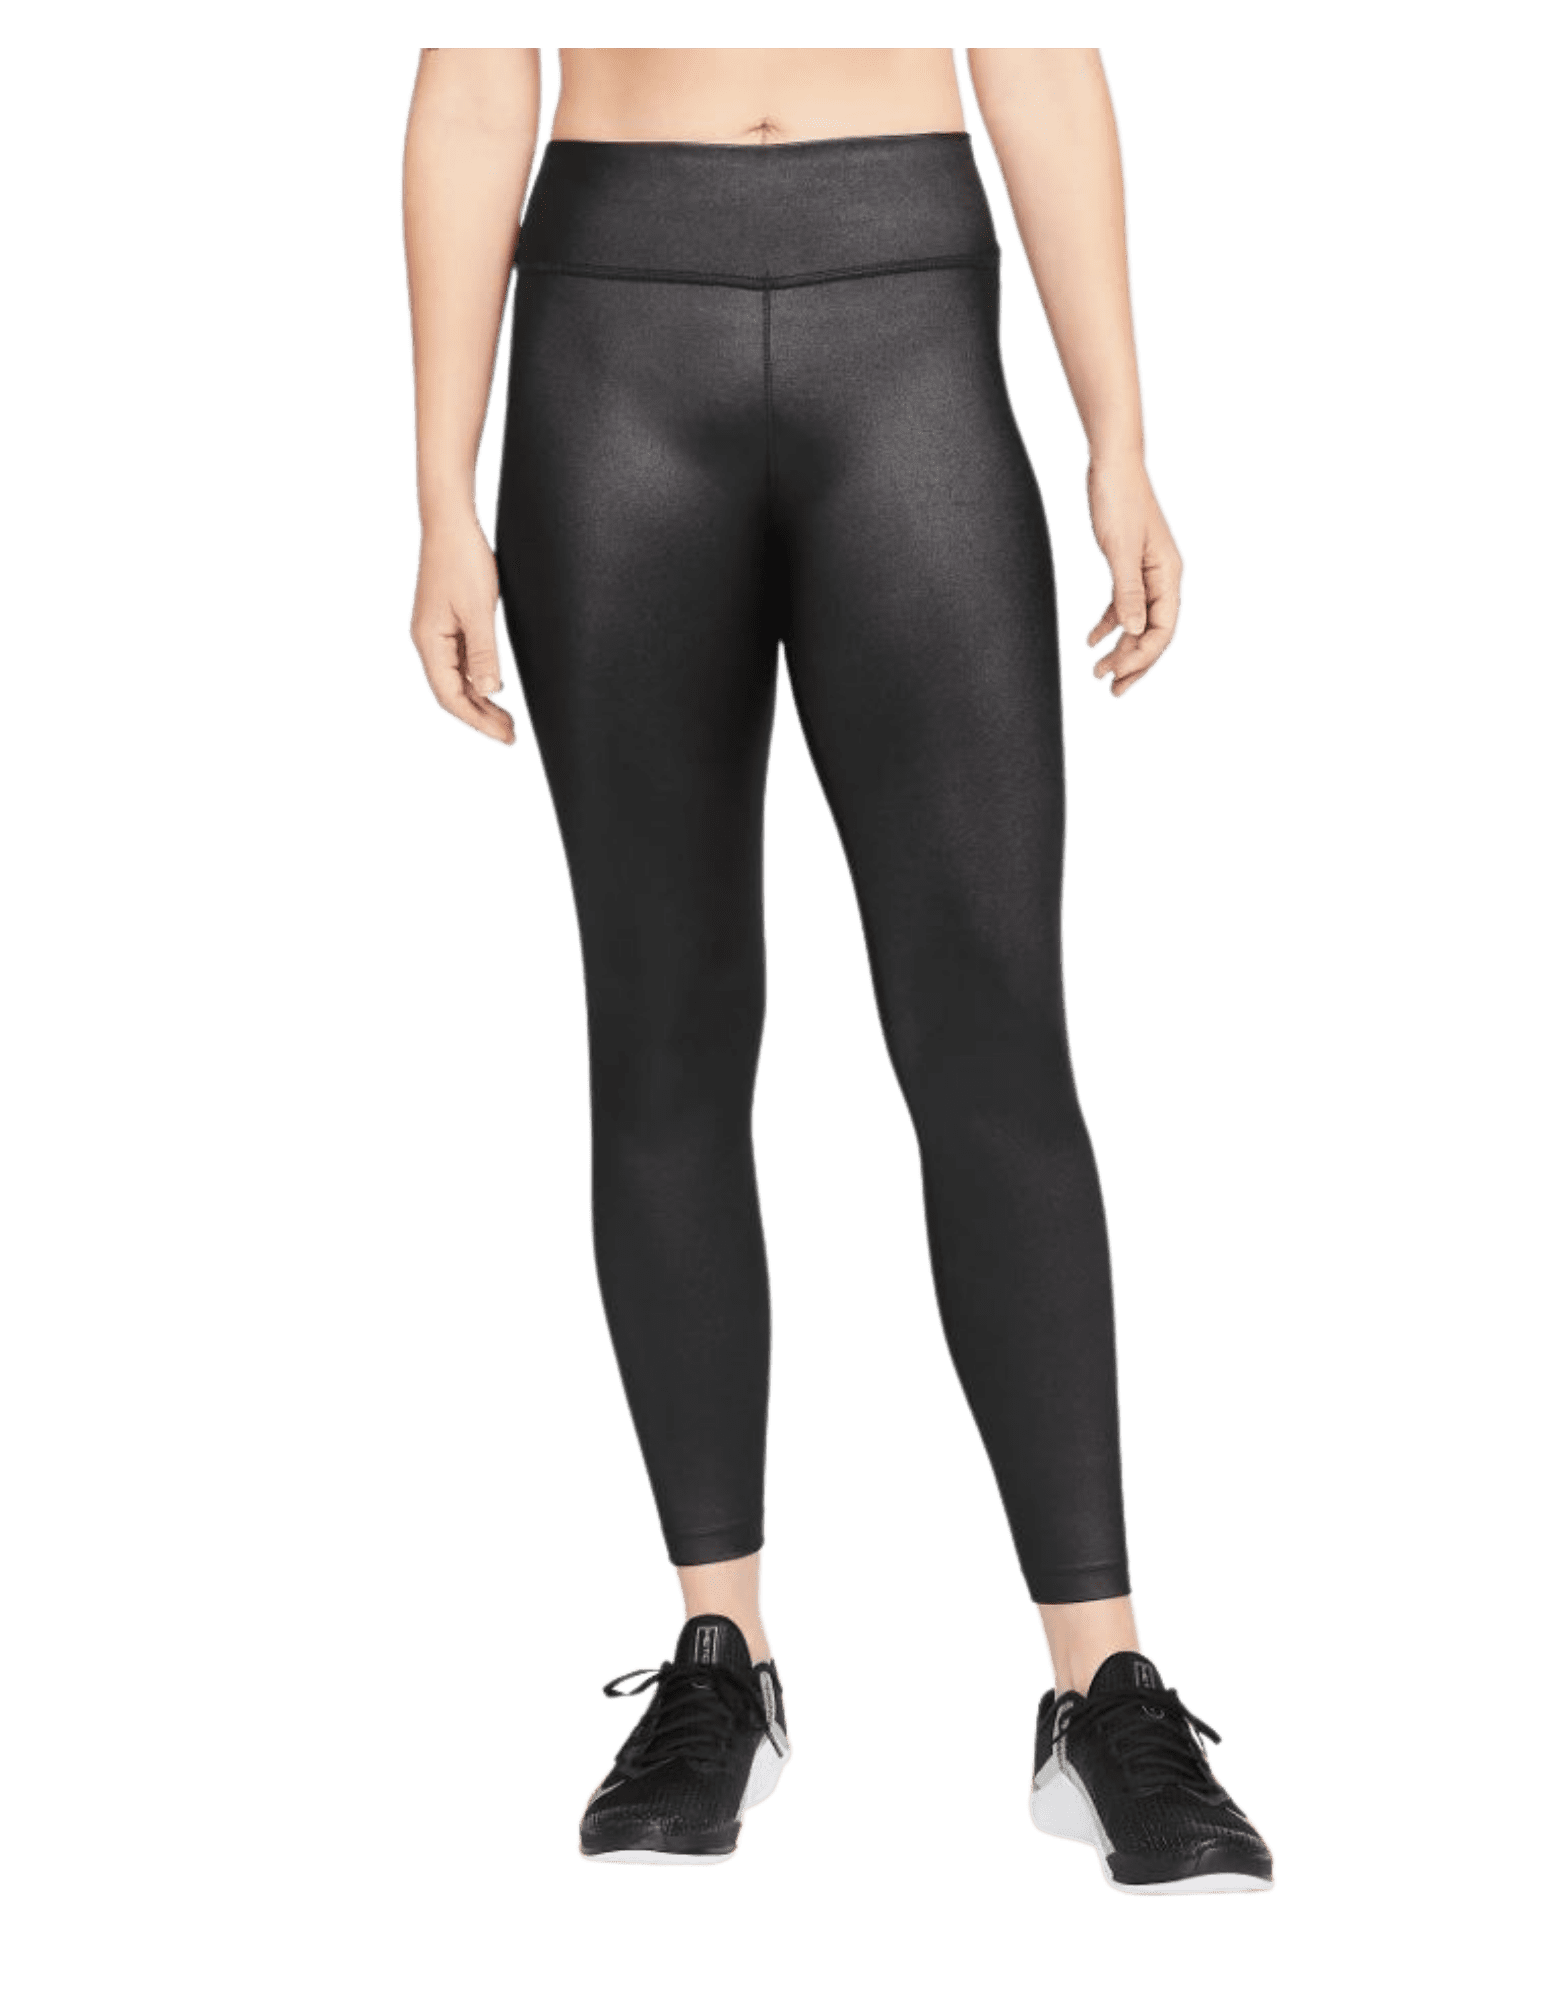 Nike Women's Dri-Fit One Mid-Rise Shine Legging Pants (Black/White, X-Small)  